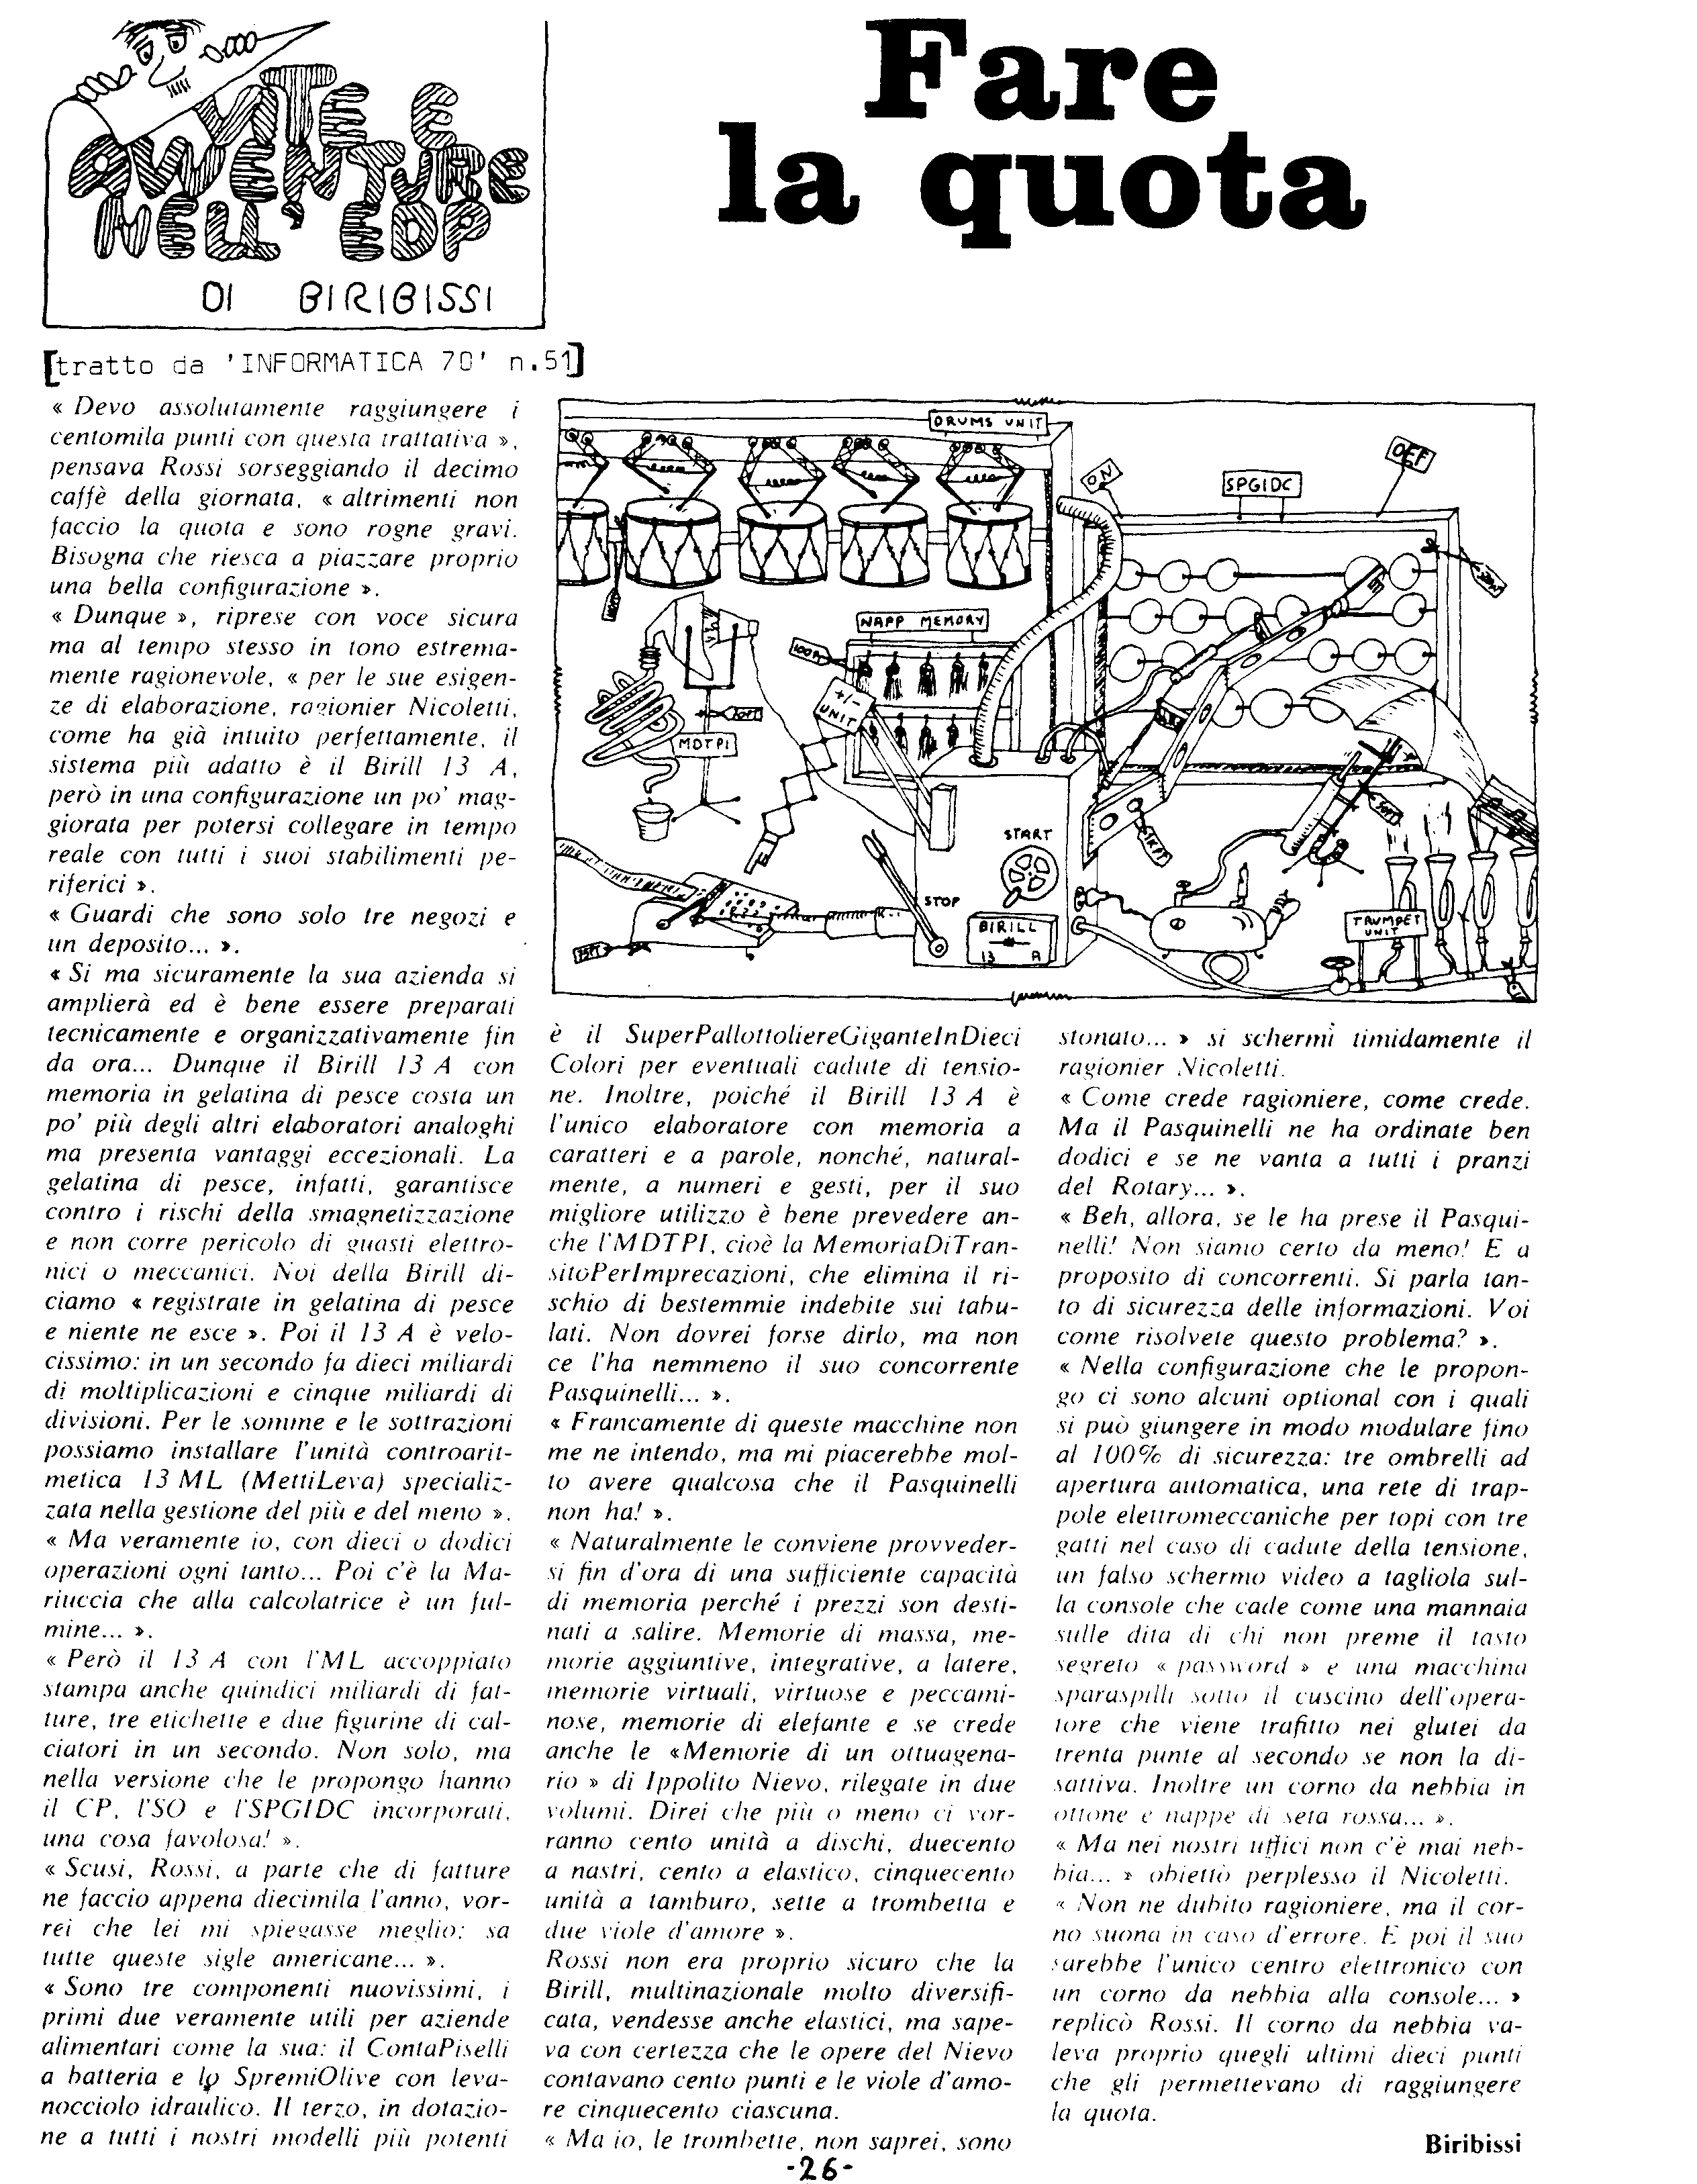 Il controbit - agosto 1978